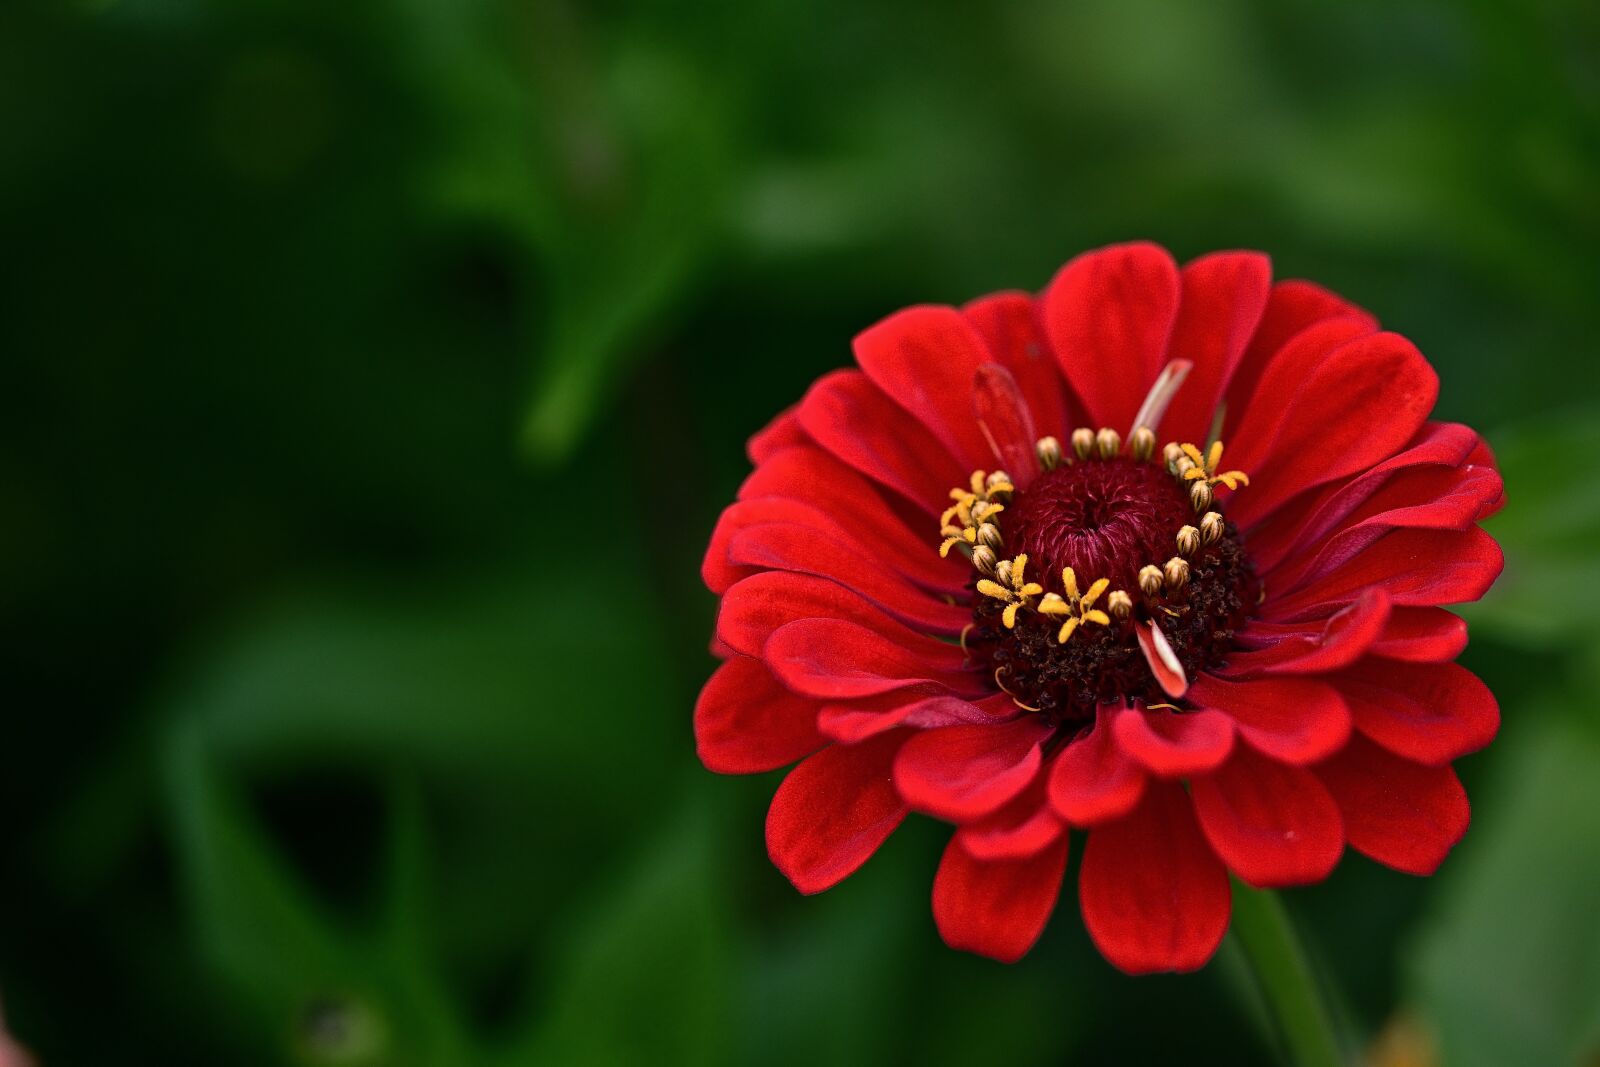 Nikon D5200 sample photo. Zinnia, red, garden photography